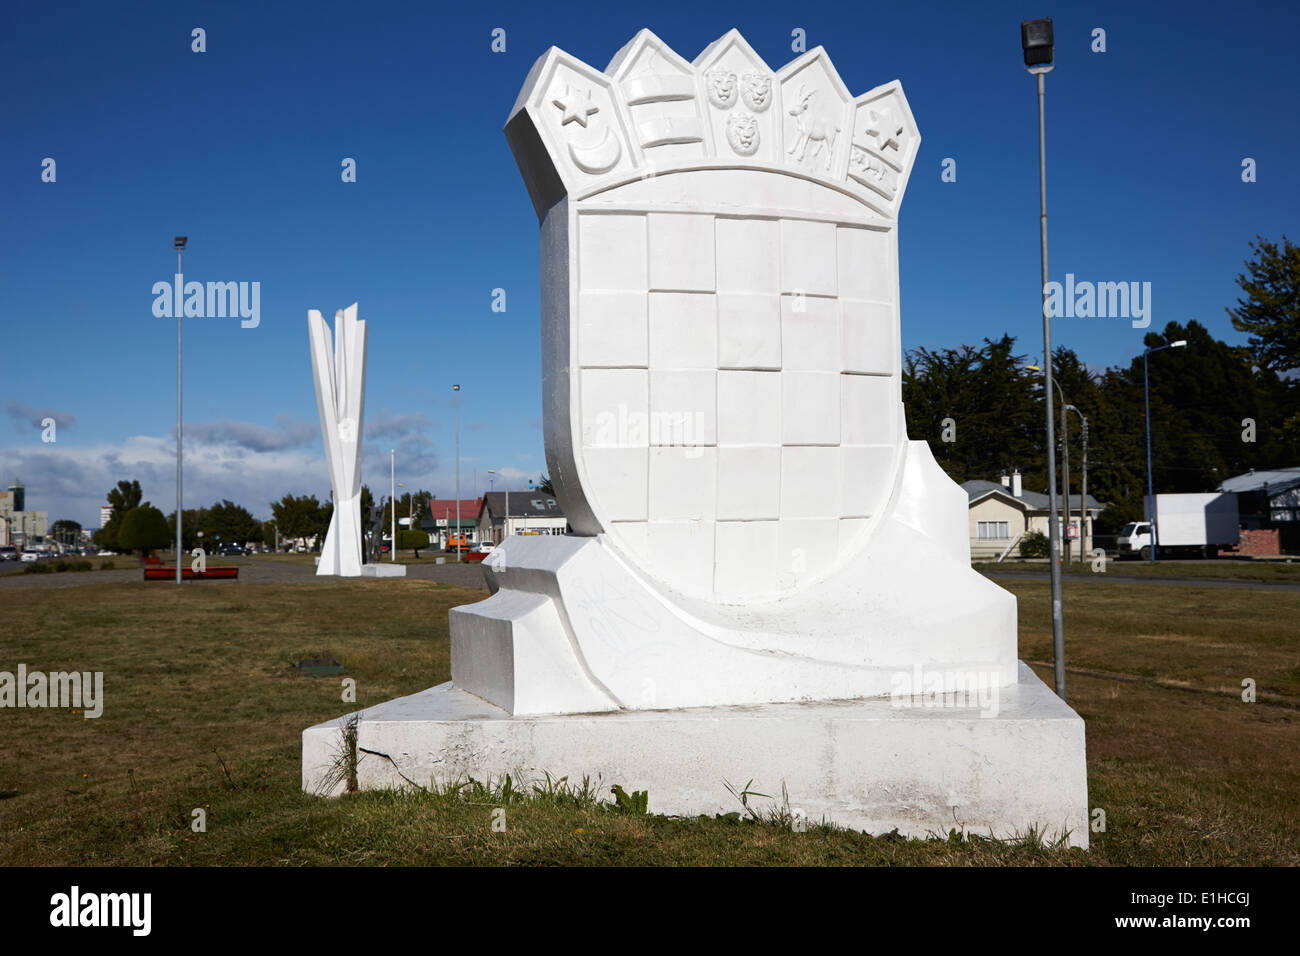 Monumento al inmigrante croata monument situé en face de l'immigration croate de monument yougoslave Punta Arenas Chili Banque D'Images